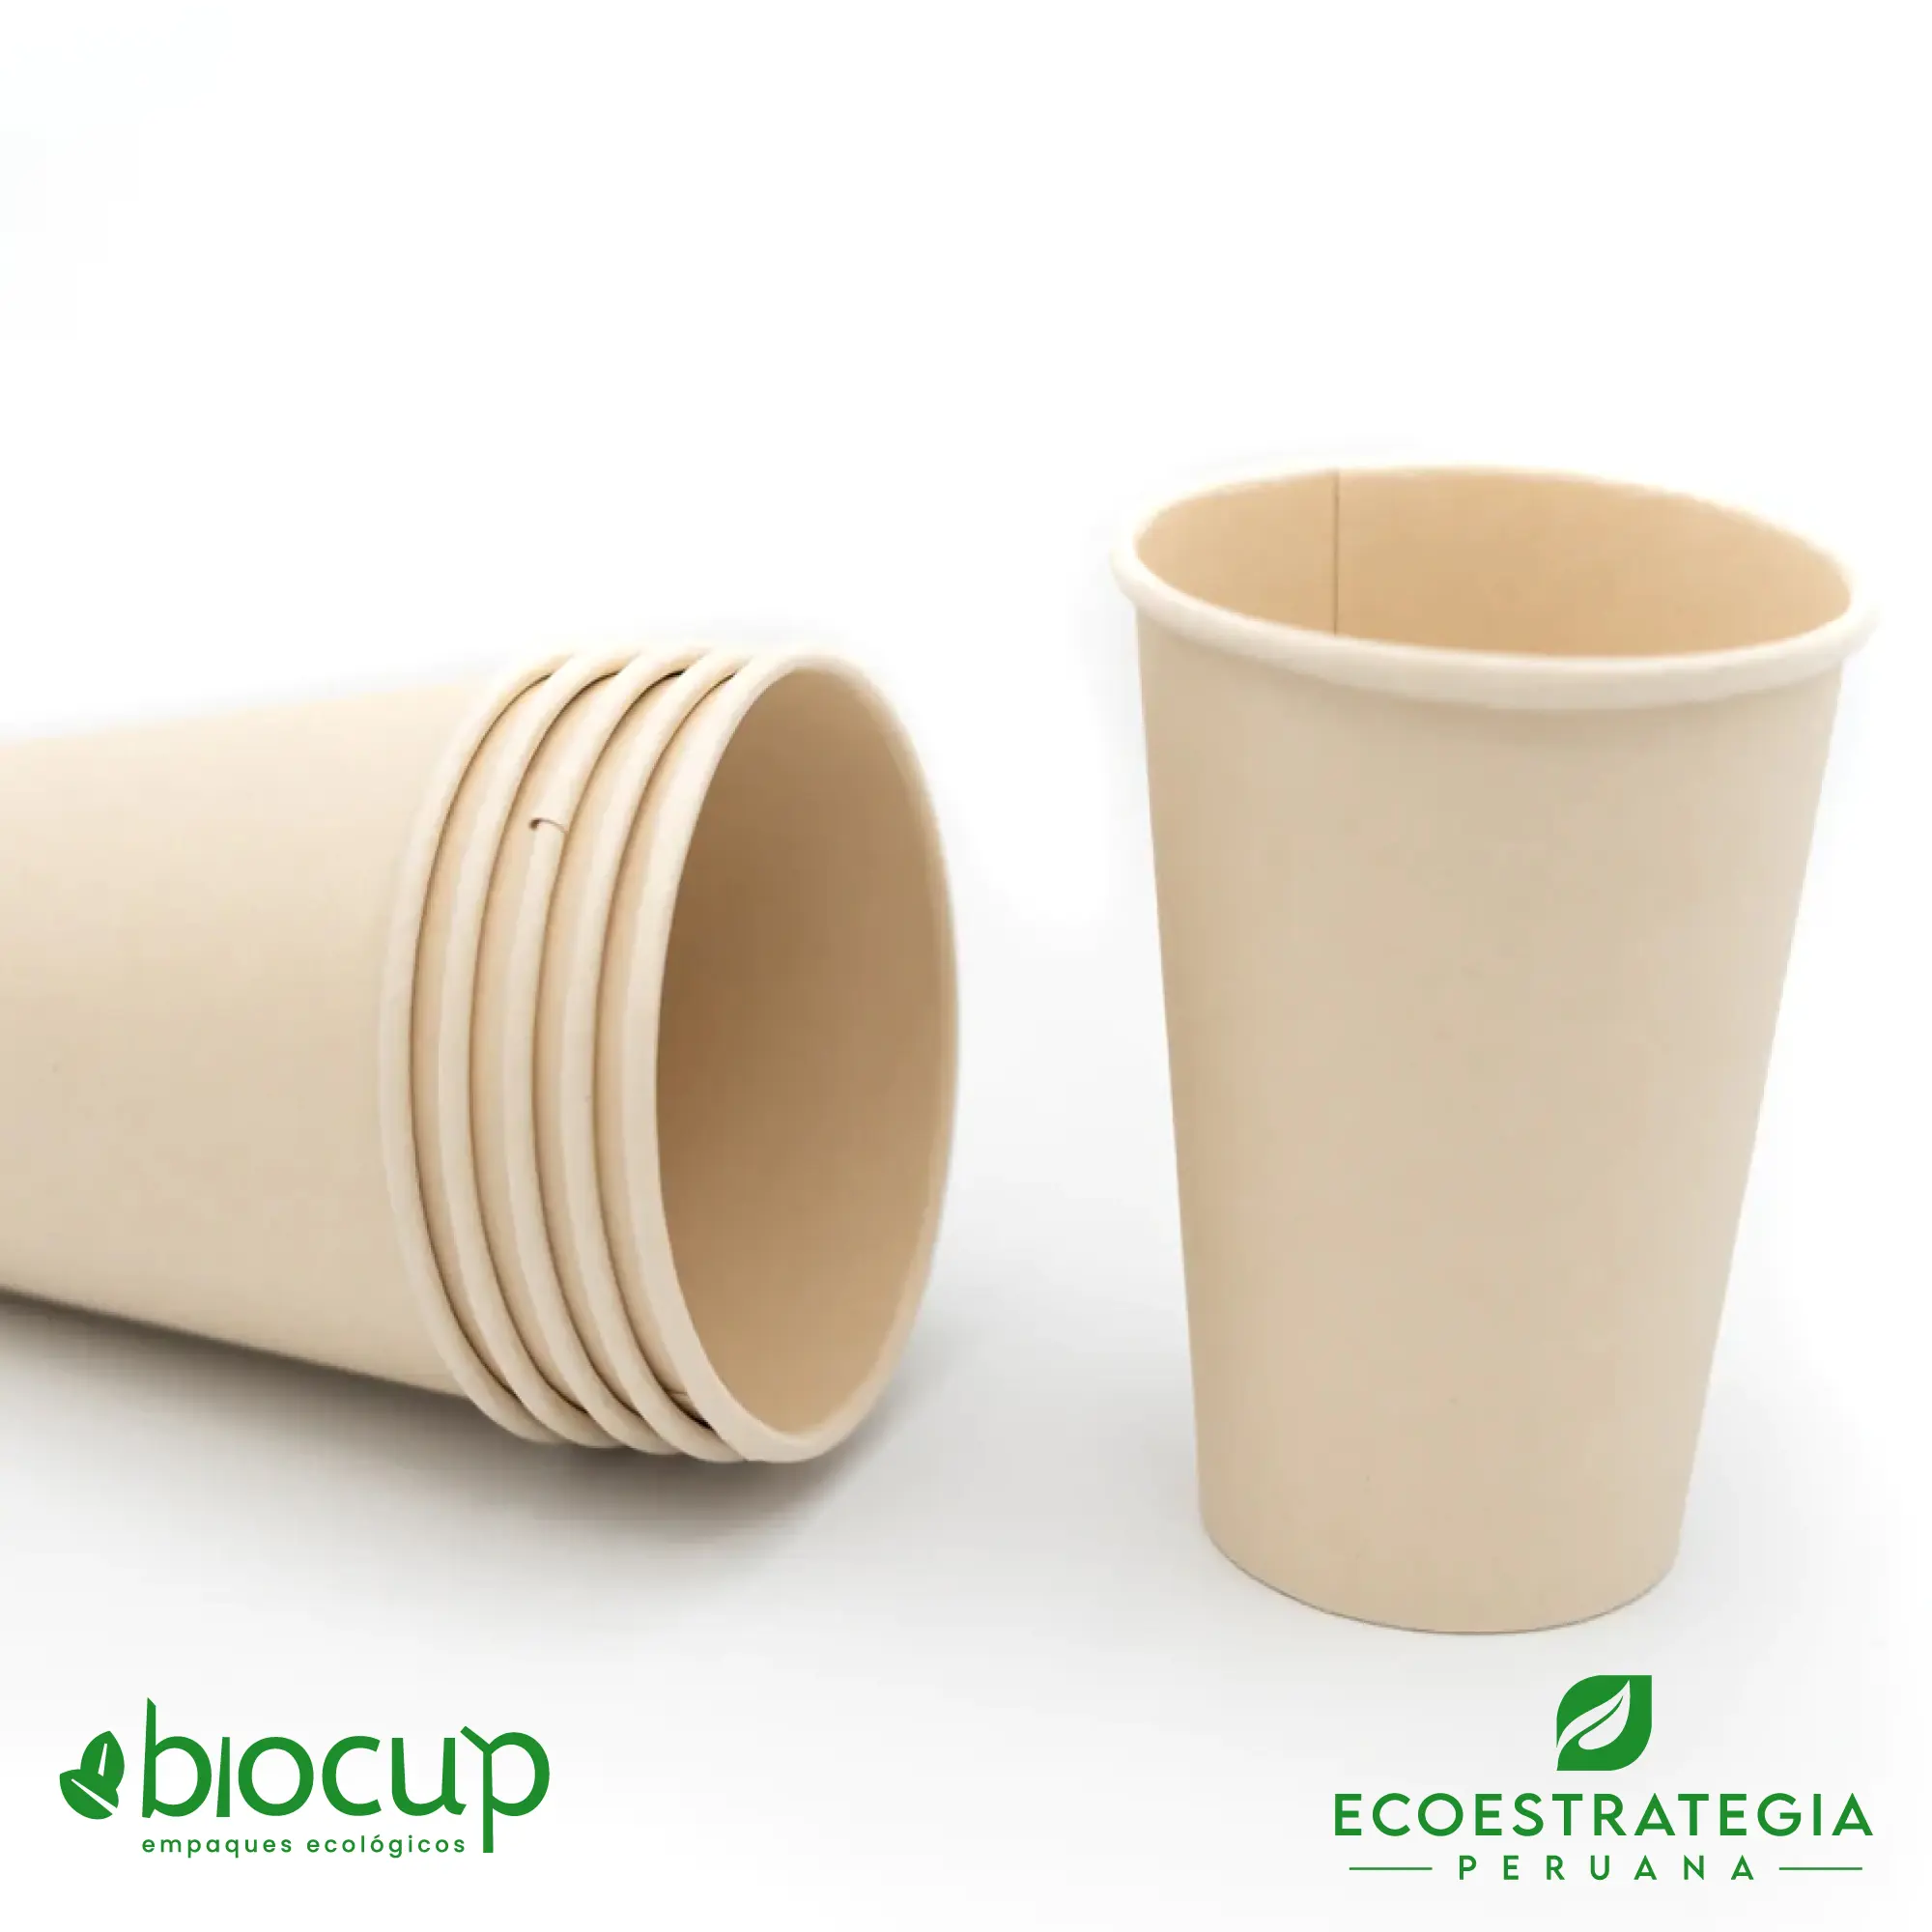 Vasos reciclable para bebidas calientes EP-B14 es tambien conocido como vasos de bambú biodegradables 14 oz, vasos compostable 14 oz, vaso desechable bambú, vasos biodegradable de bambú por mayor, vaso compostable 14 oz , vaso bambú, vaso bioform 14 oz, vaso bioform 12 oz, vaso pamolsa biodegradable, vaso por mayor, vaso compostable marrón, vasos para café Perú, vasos personalizable biodegradable, vaso hermético para delivery, vasos biodegradables para delivery, mayoristas de vasos biodegradables, distribuidores de vasos biodegradables, importadores de vasos biodegradables, vasos biodegradables eco estrategia peruana